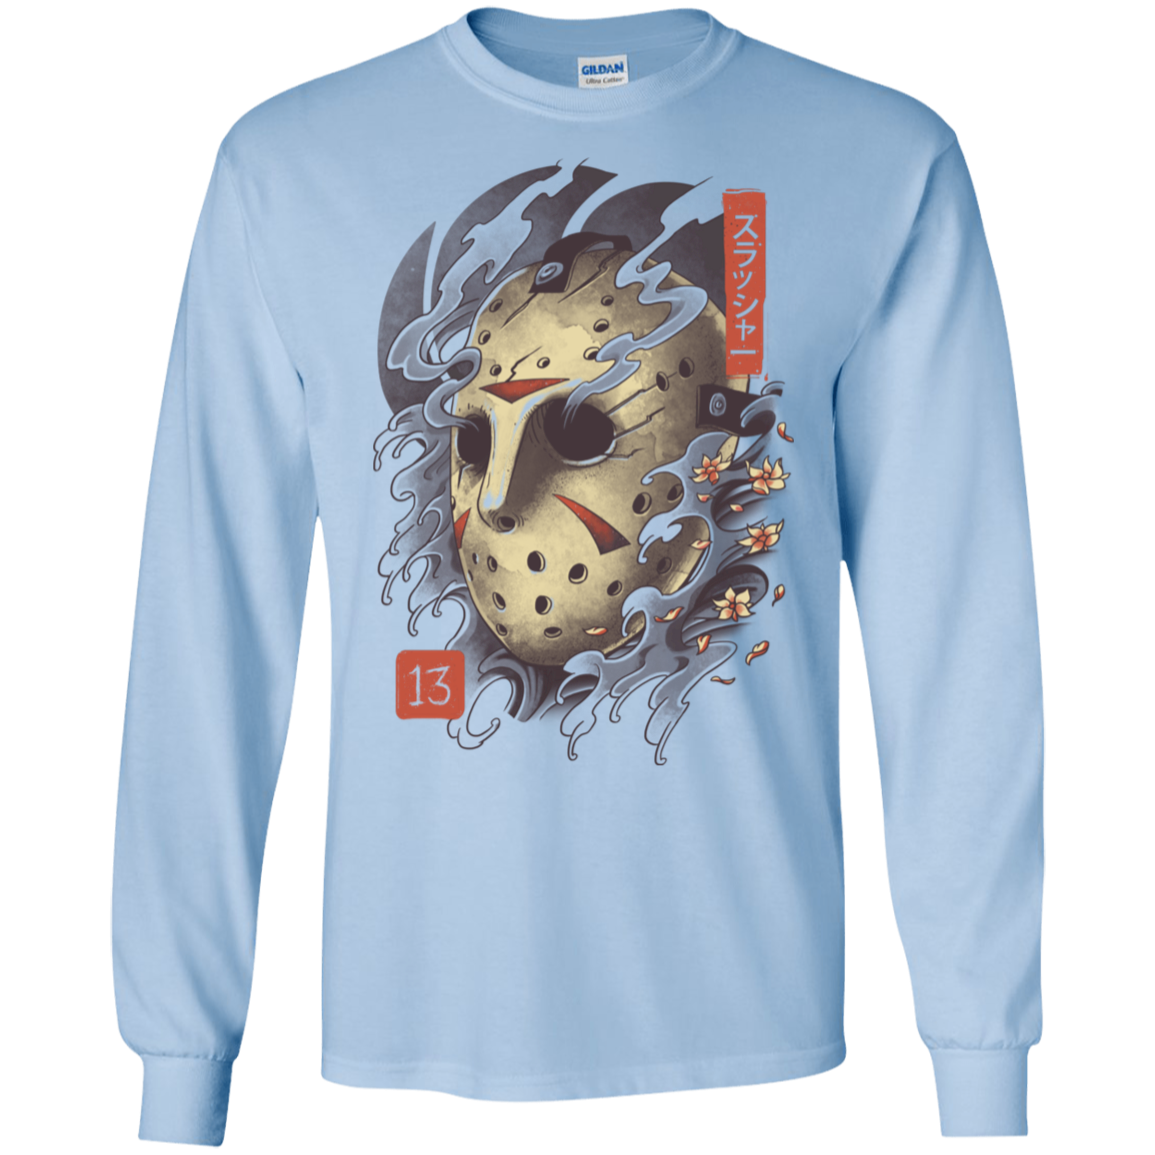 Oni Jason Mask Men's Long Sleeve T-Shirt